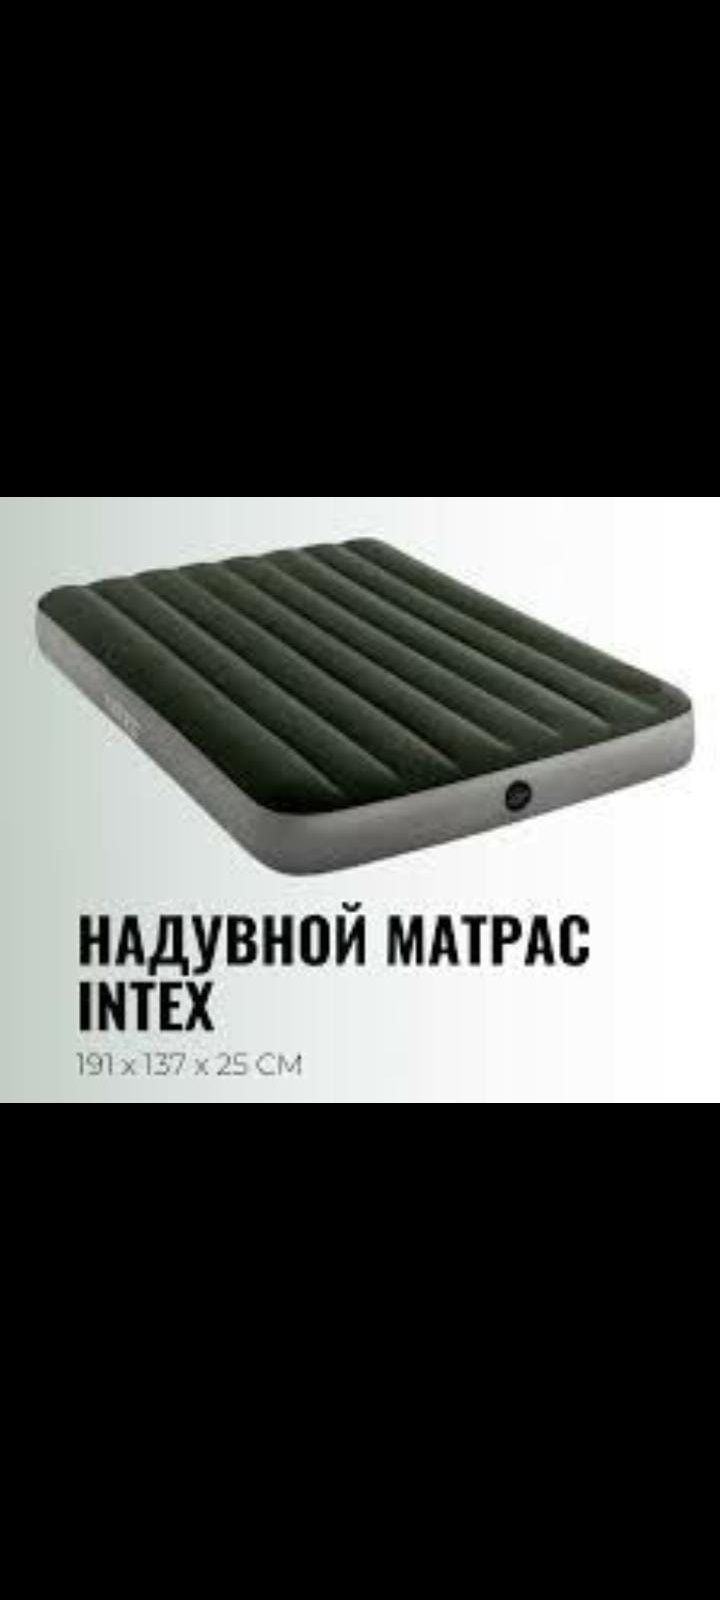 Надувной матрас кровать на двоих INTEX